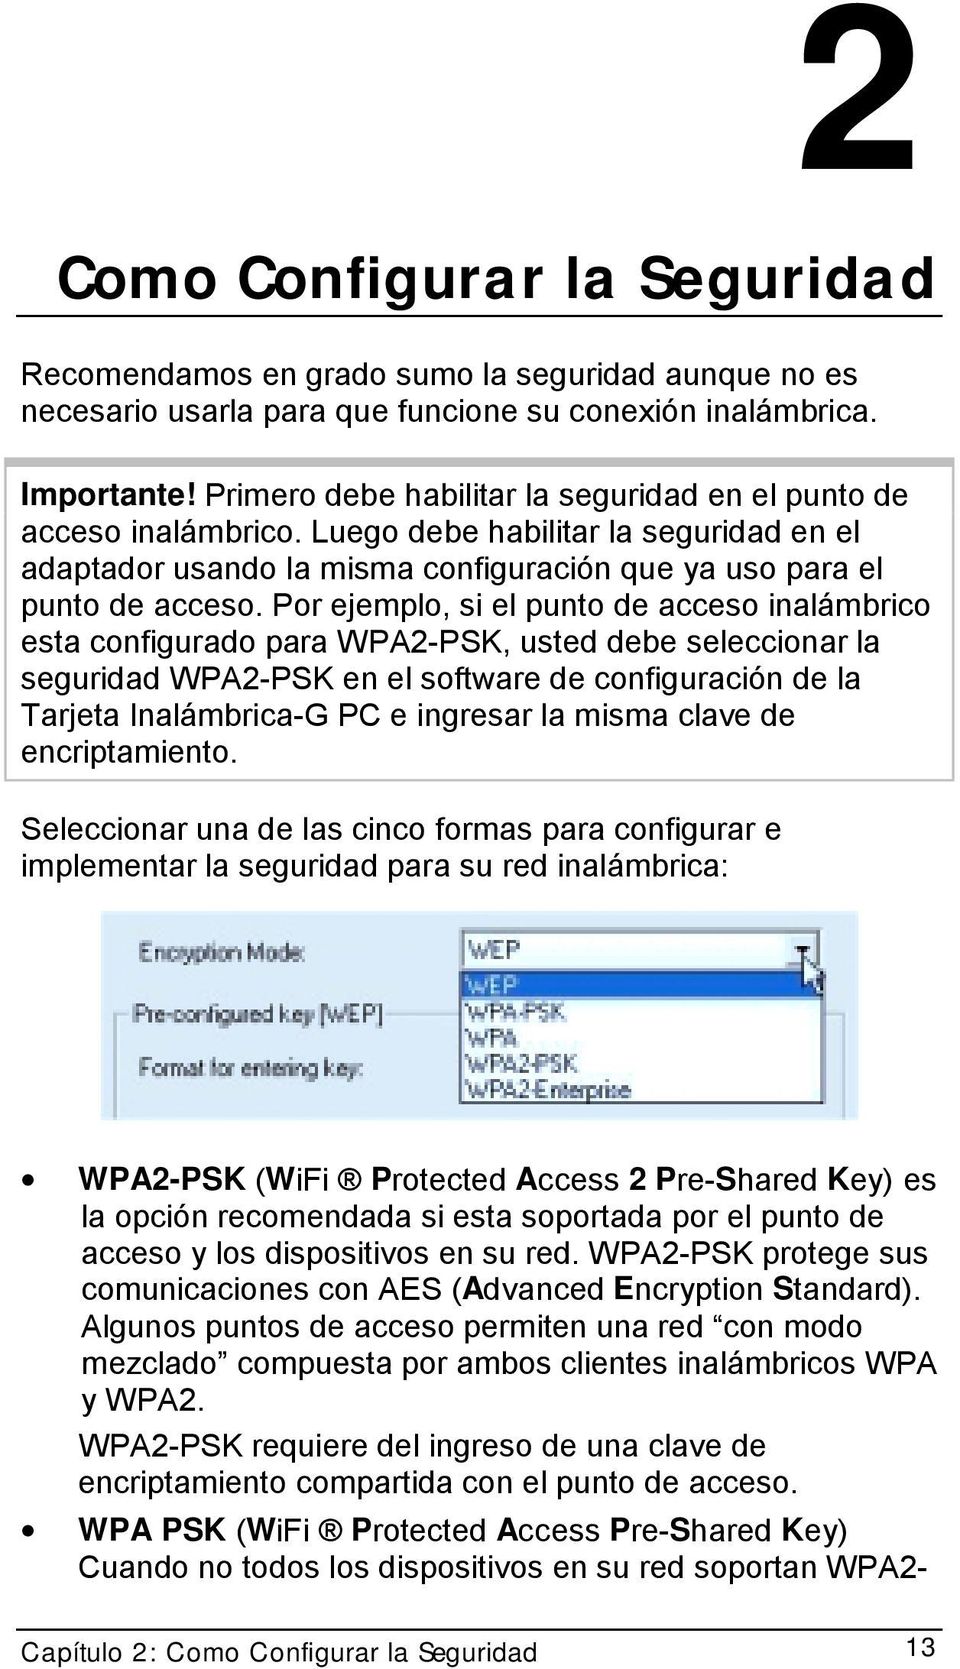 Por ejemplo, si el punto de acceso inalámbrico esta configurado para WPA2-PSK, usted debe seleccionar la seguridad WPA2-PSK en el software de configuración de la Tarjeta Inalámbrica-G PC e ingresar